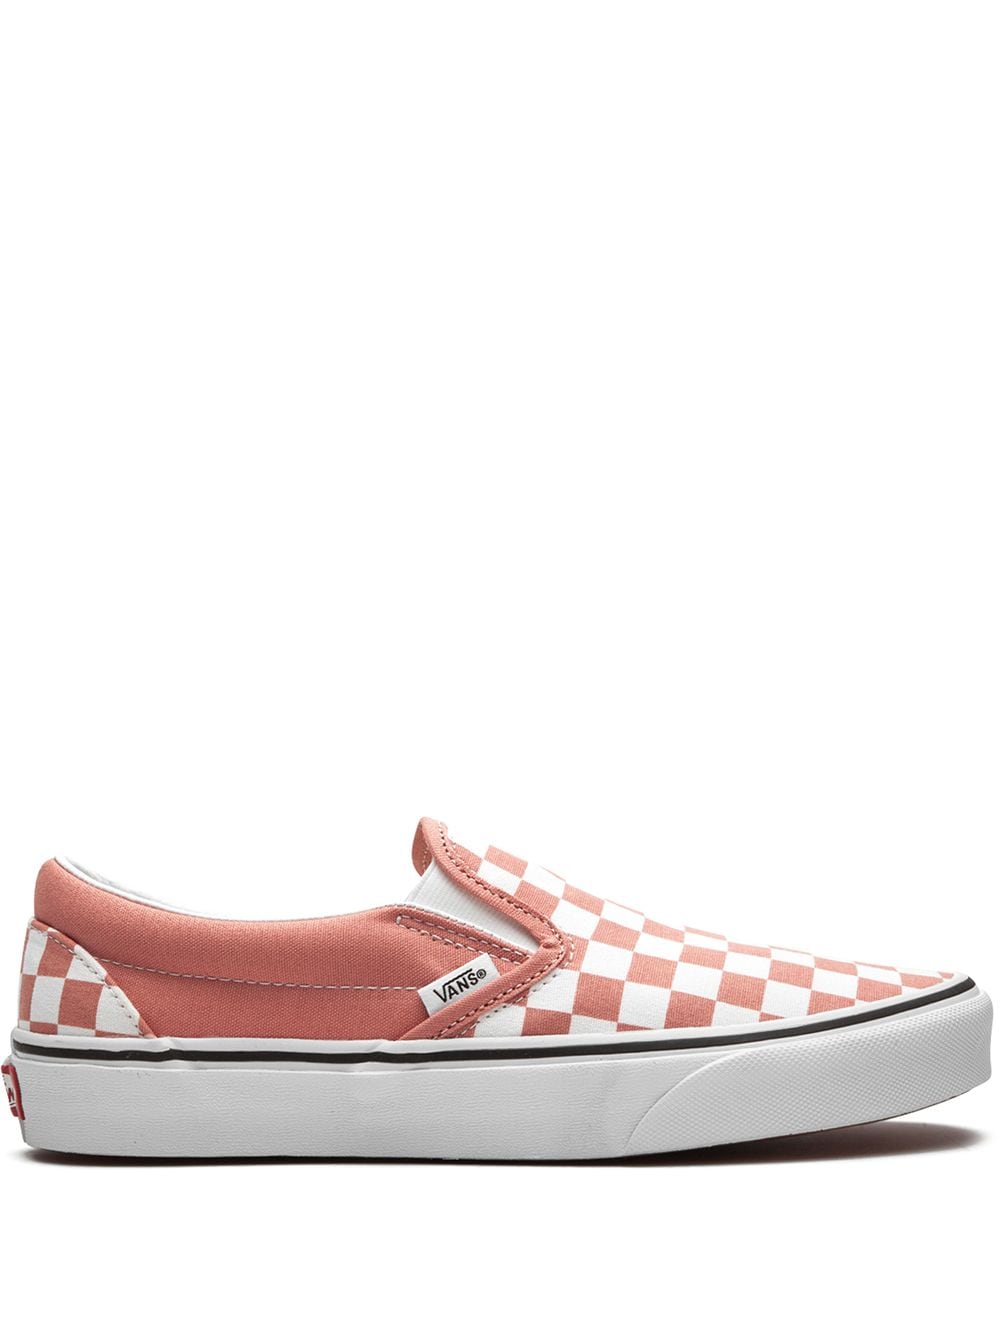 Vans Classic Slip On sneakers - Pink von Vans